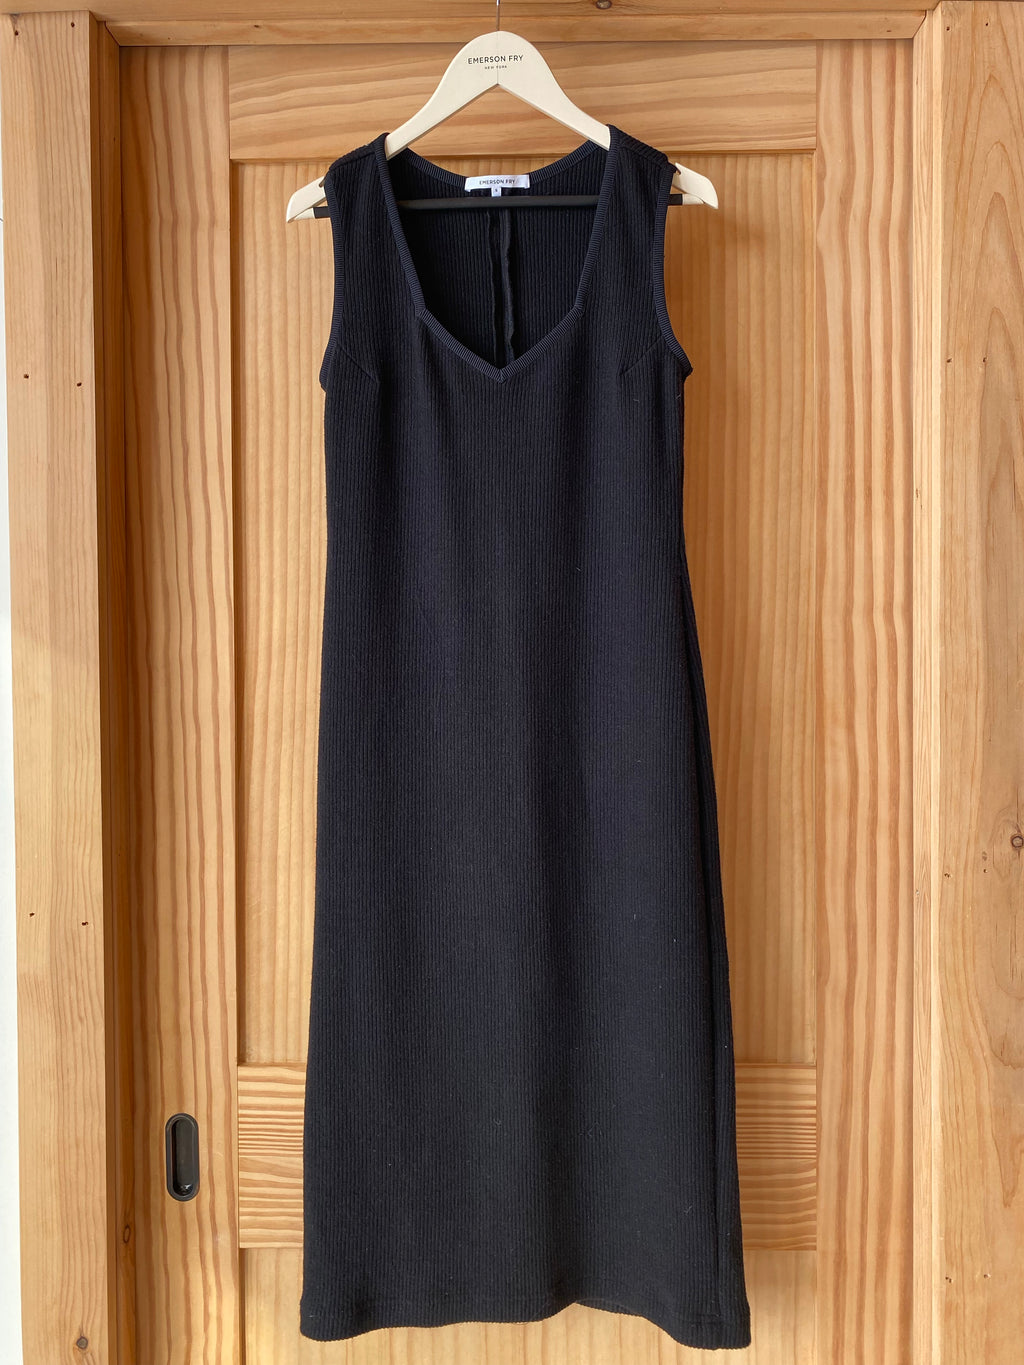 Nadja Knit Dress - Black Hemp Cotton Rib Organic